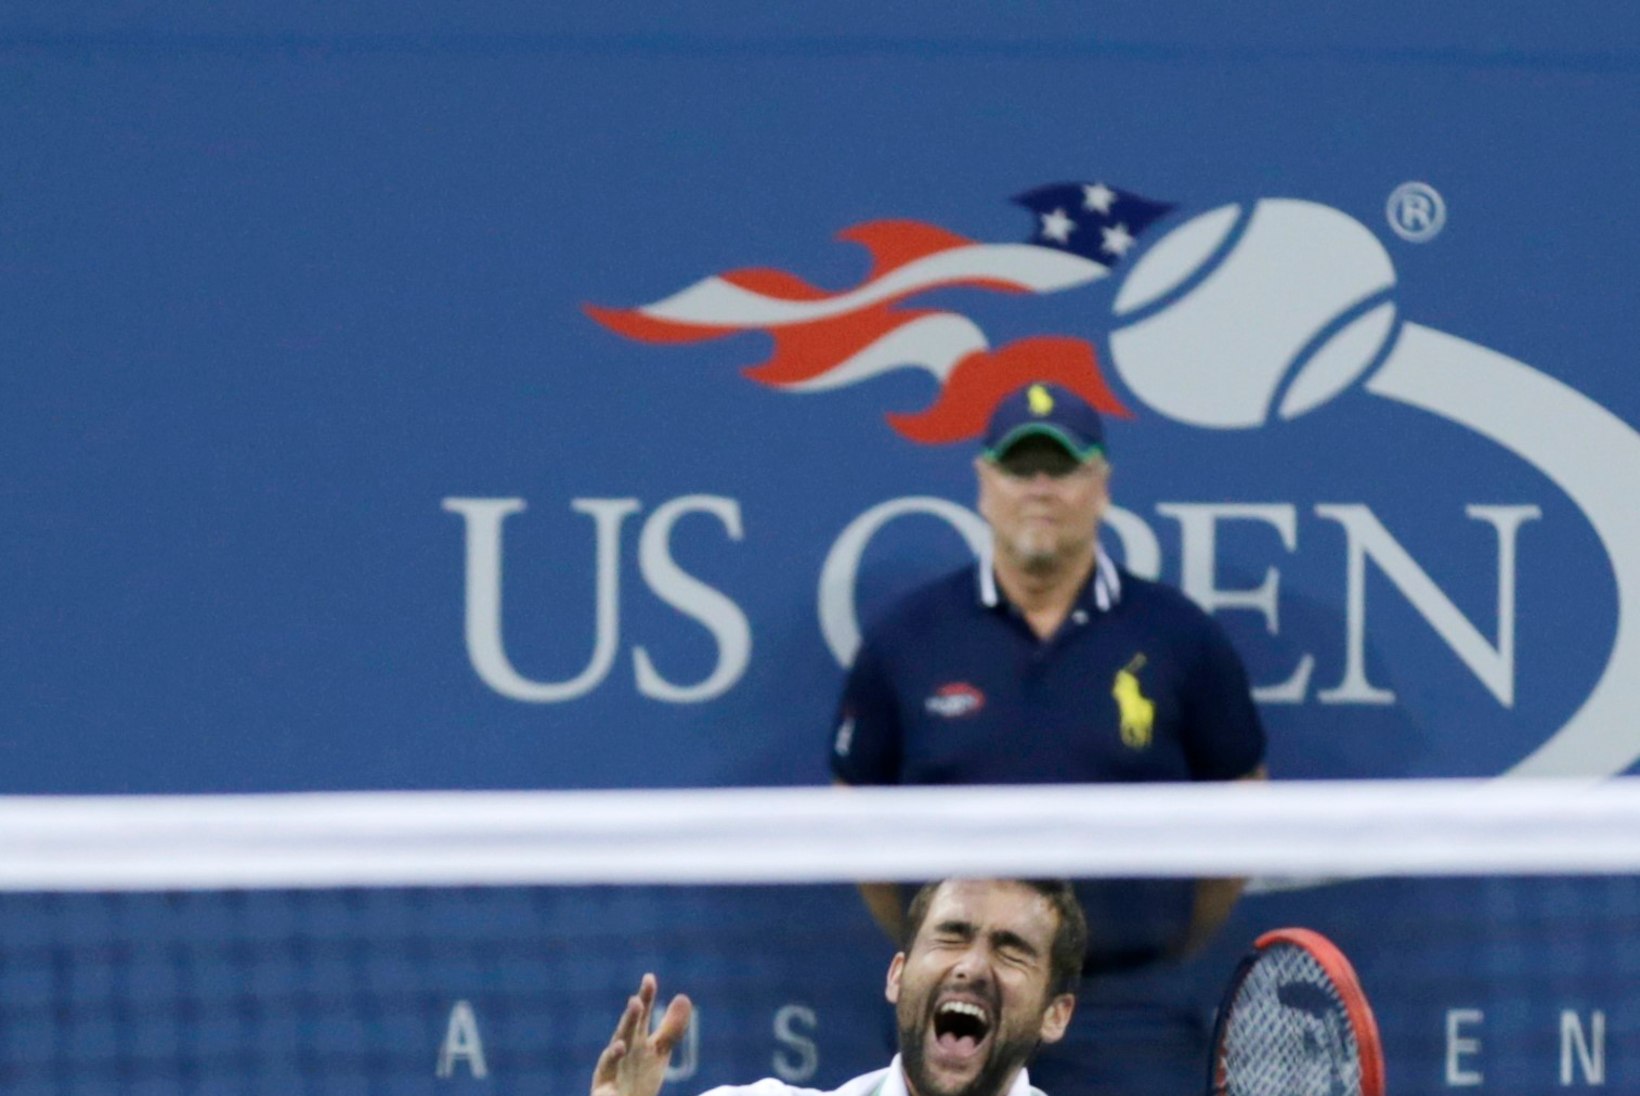 GALERII: US Openi võitis 14. asetusega horvaat